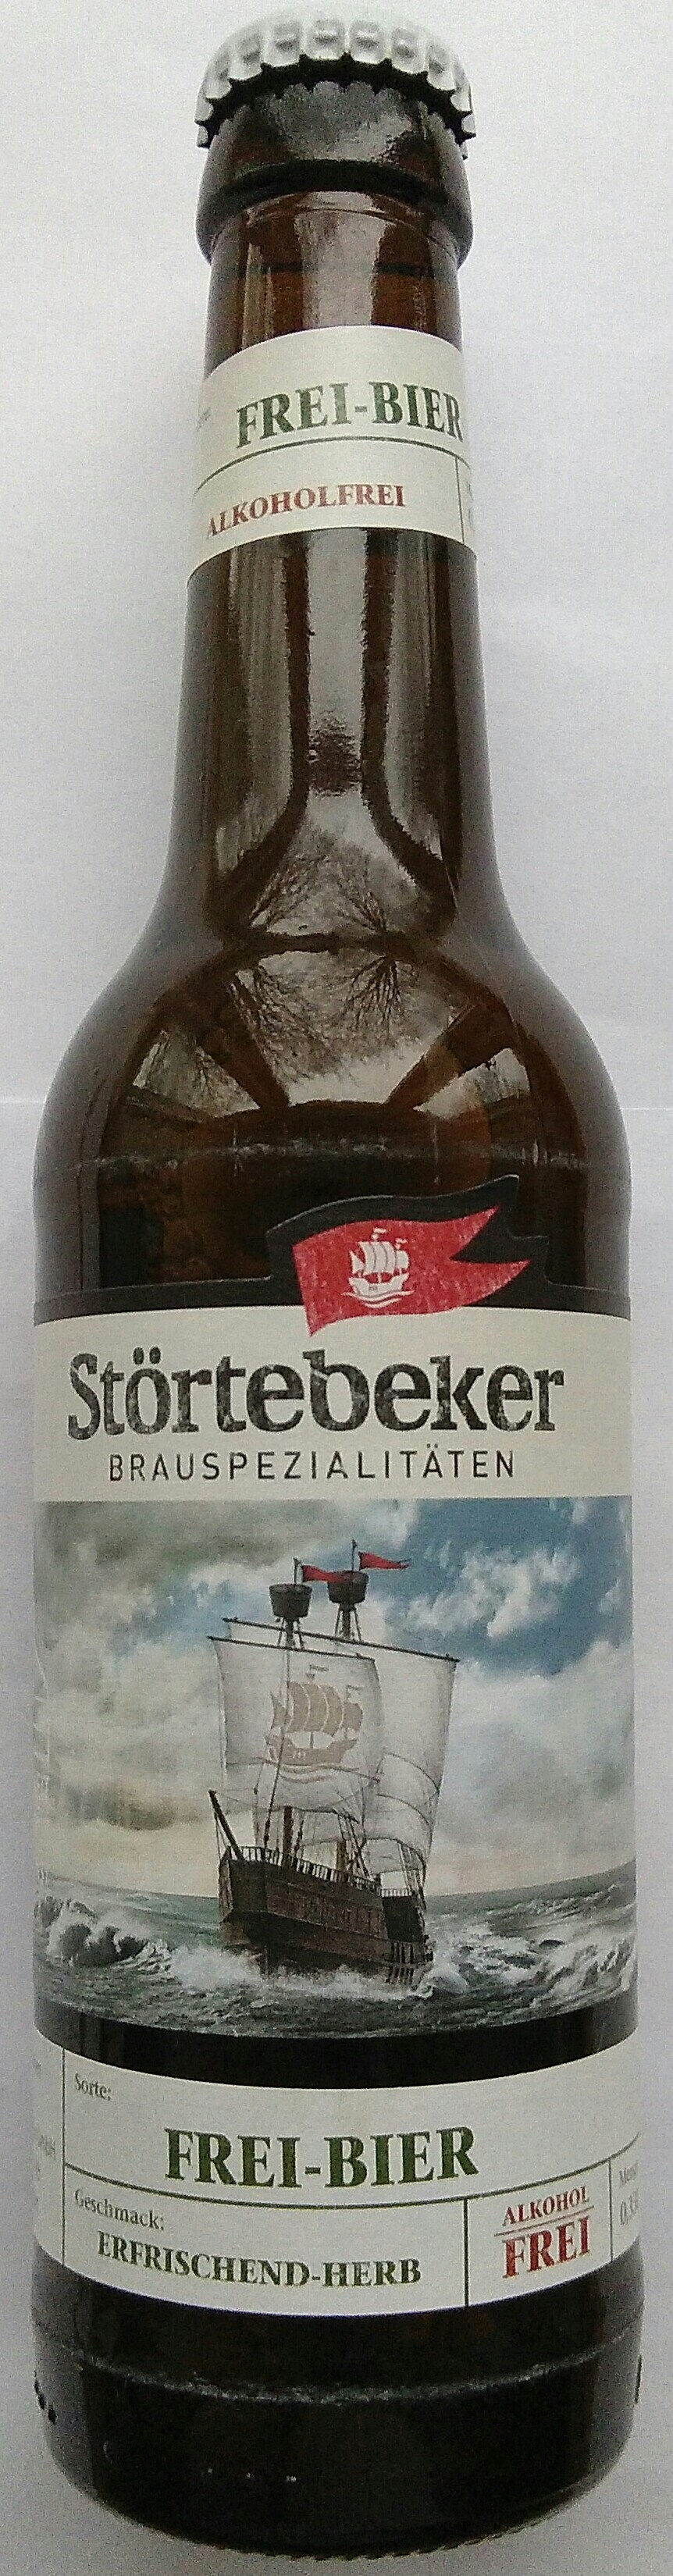 Frei-Bier - Product - de